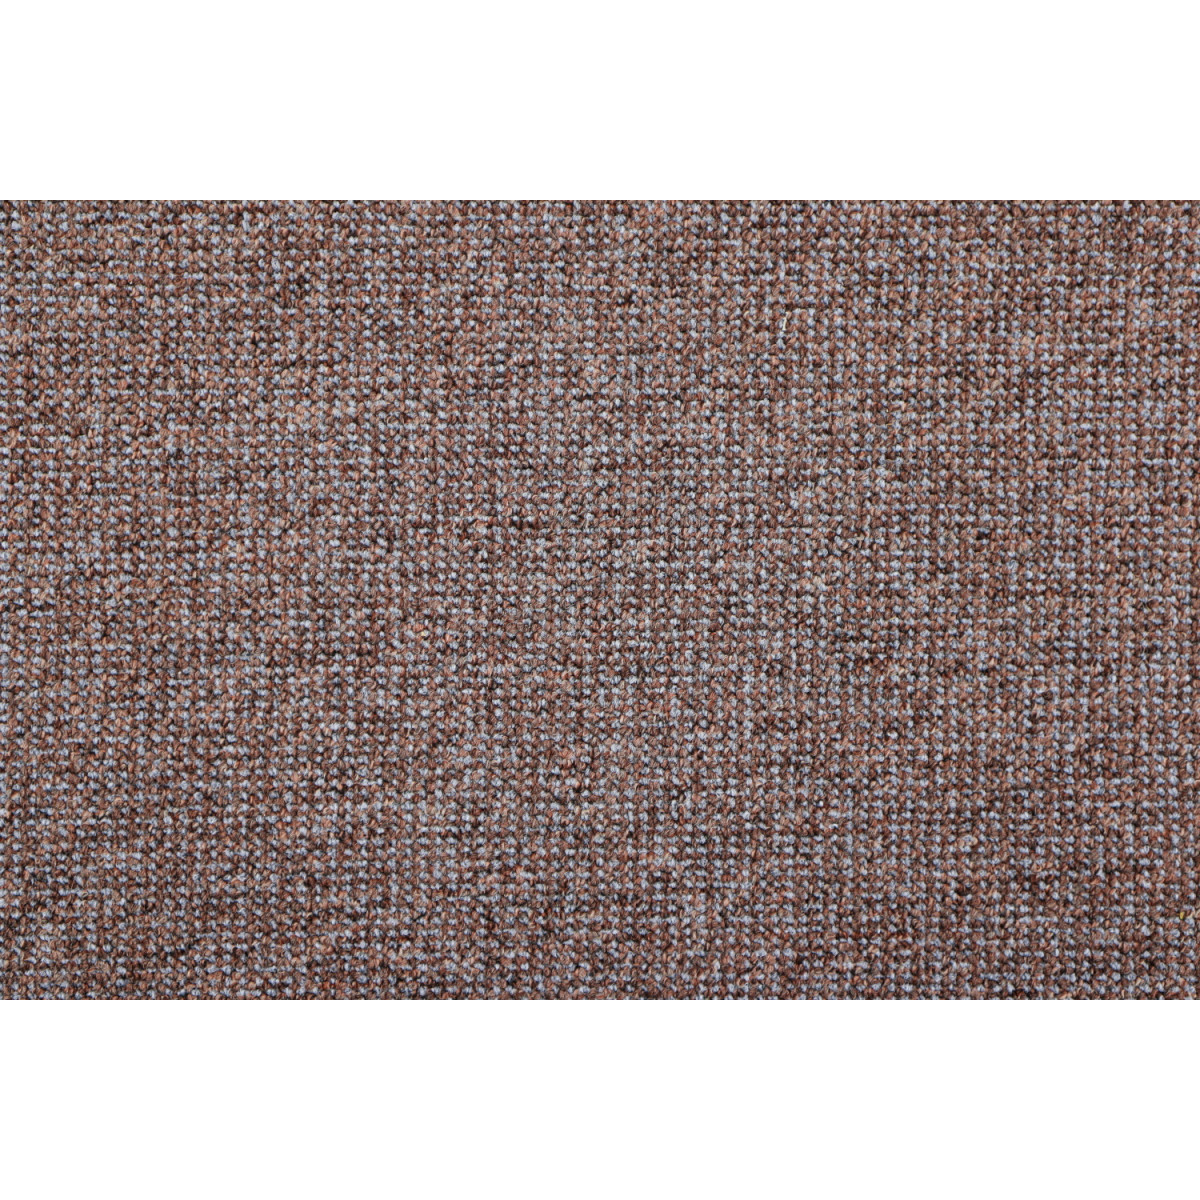 AKCIA: 310x120 cm Metrážny koberec Lion 16 - neúčtujeme odrezky z role!